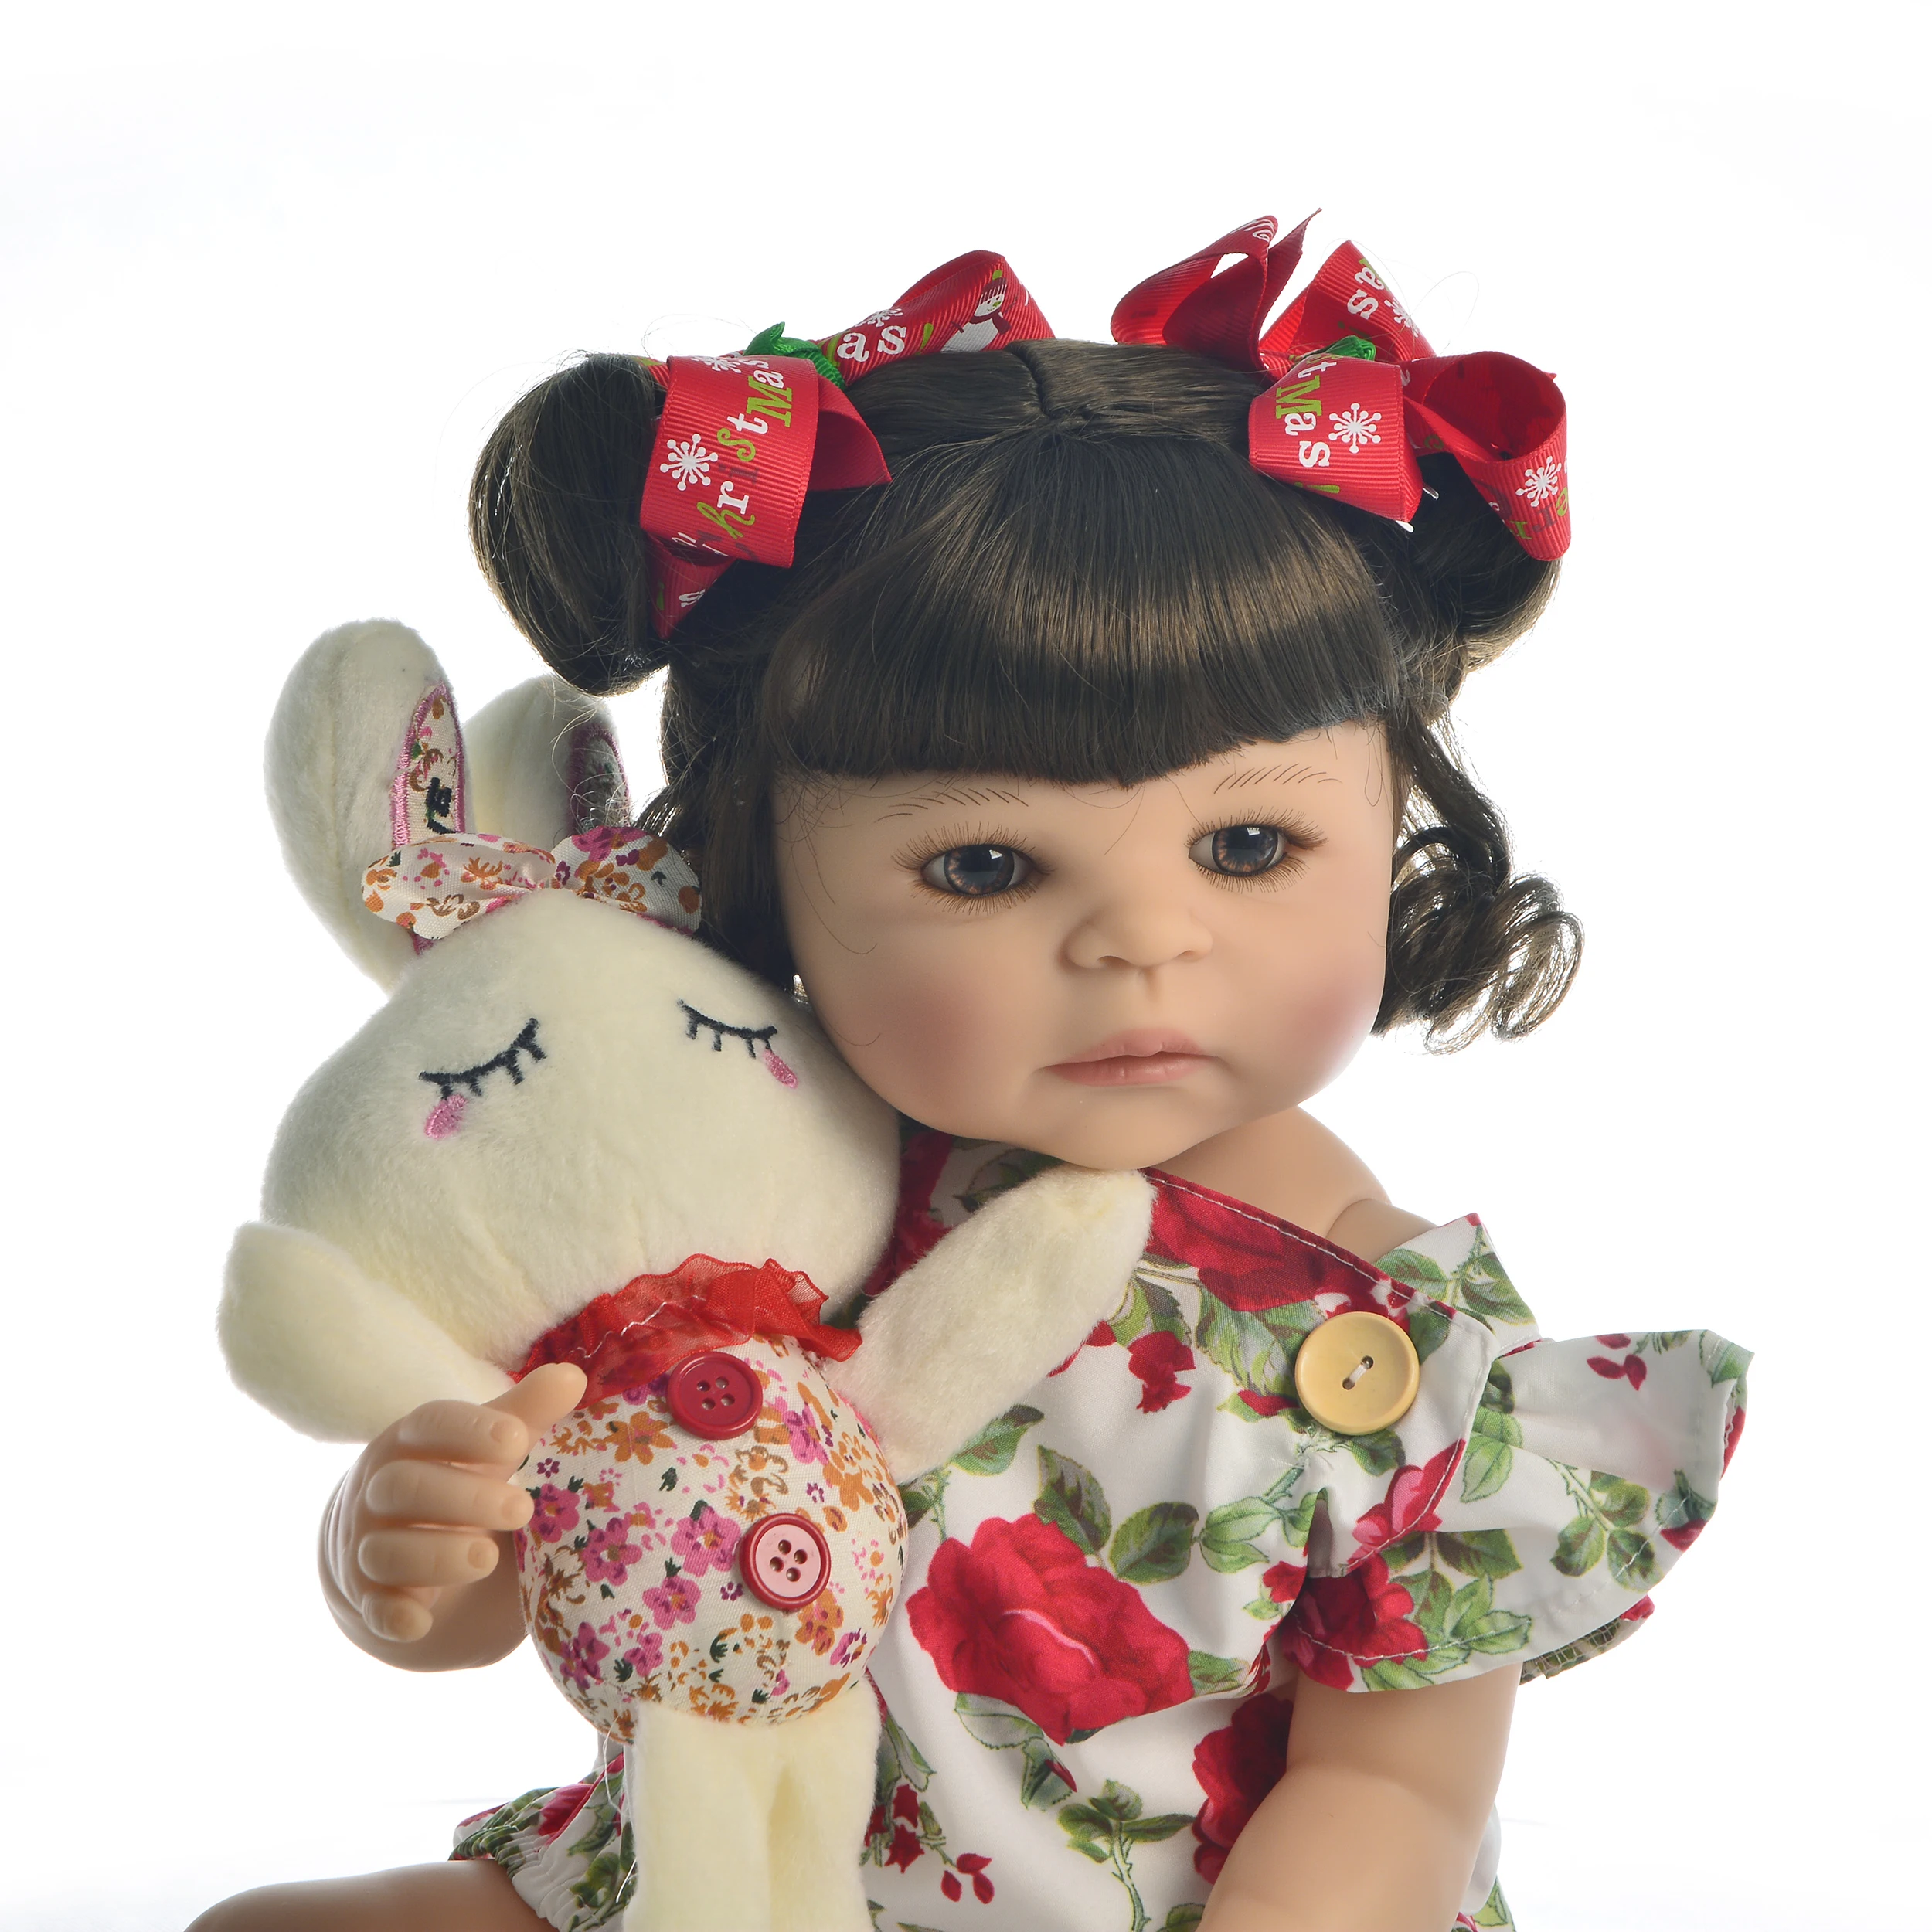 Горячая Распродажа 2" 55 см силиконовая кукла-реборн на все тело, игрушка для девочки, принцесса, детская игрушка, розовый комбинезон, детский подарок на день рождения